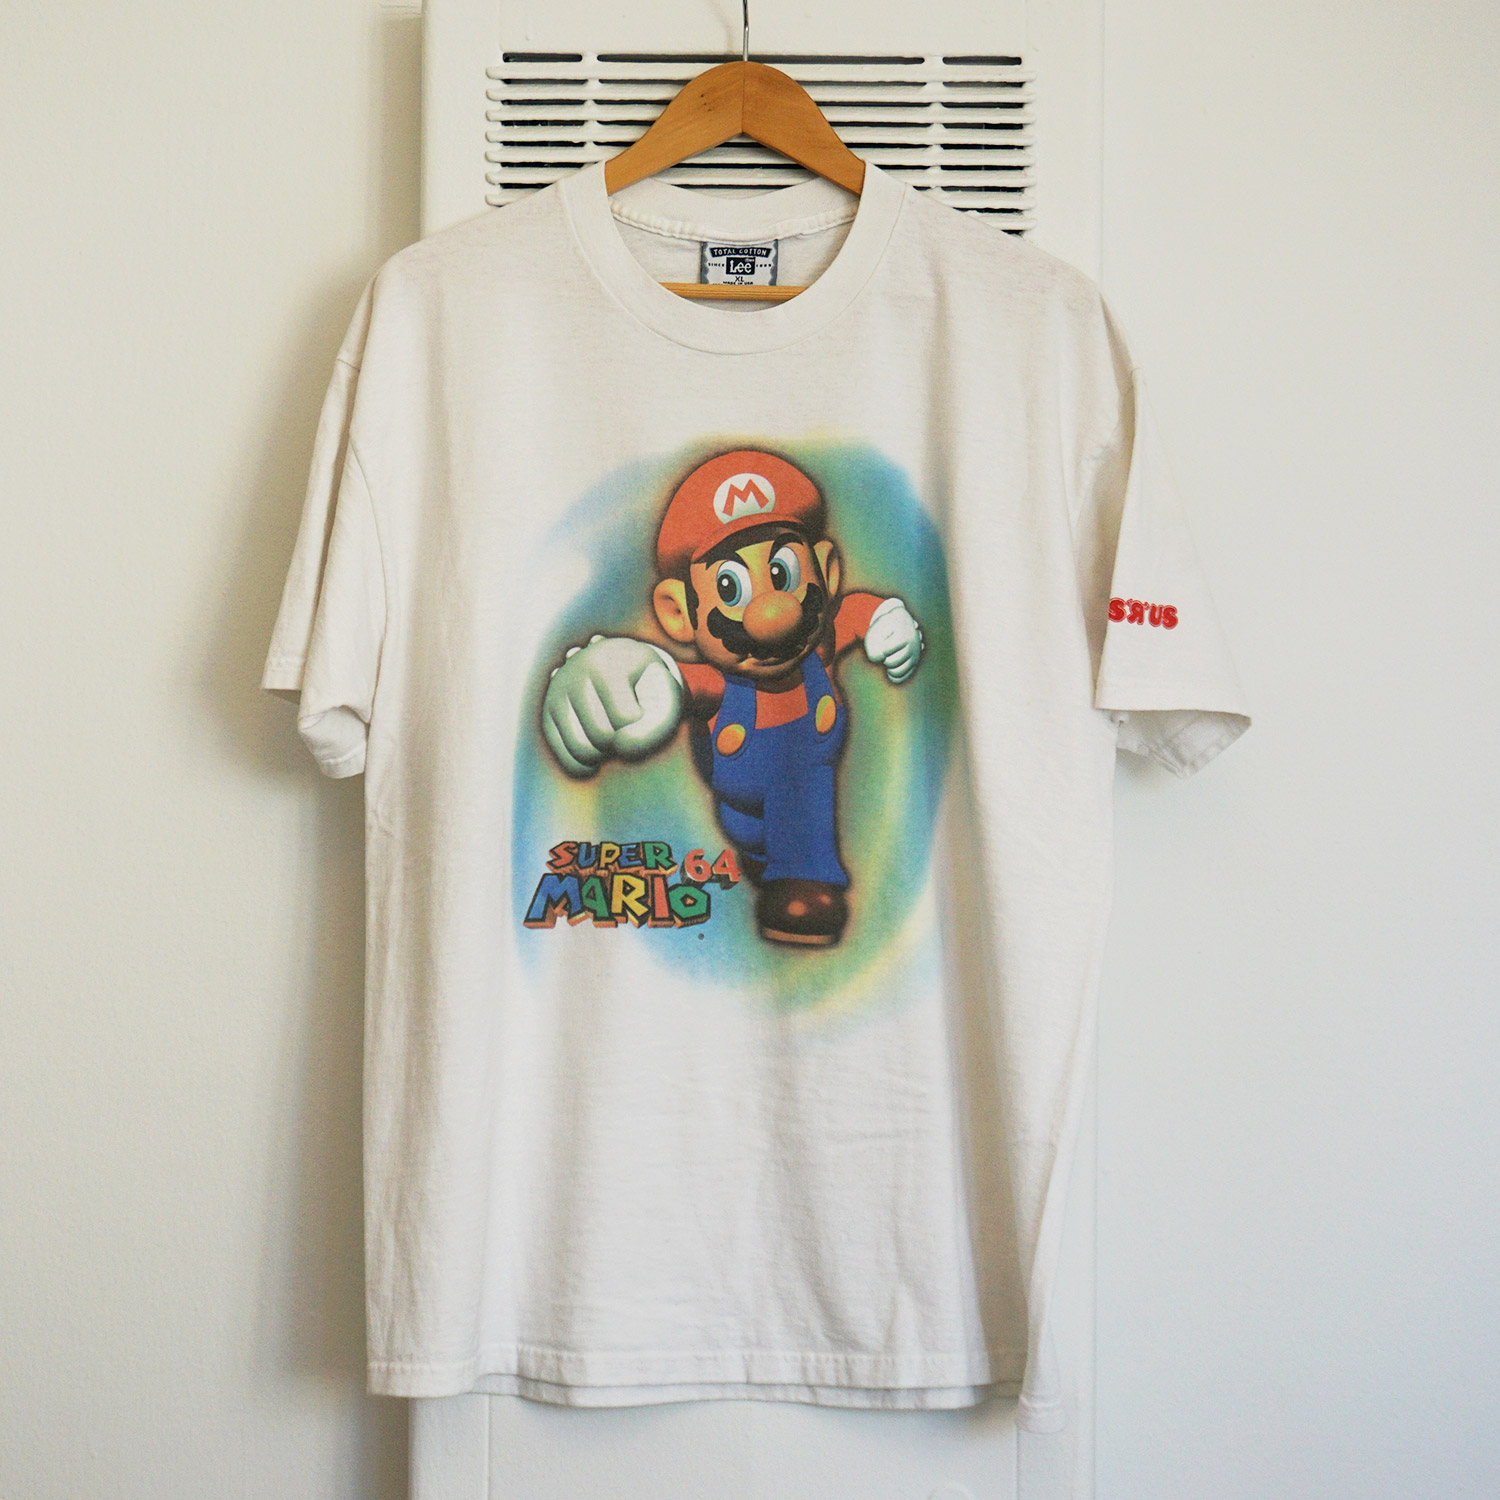 Super Mario 64 T-shirt